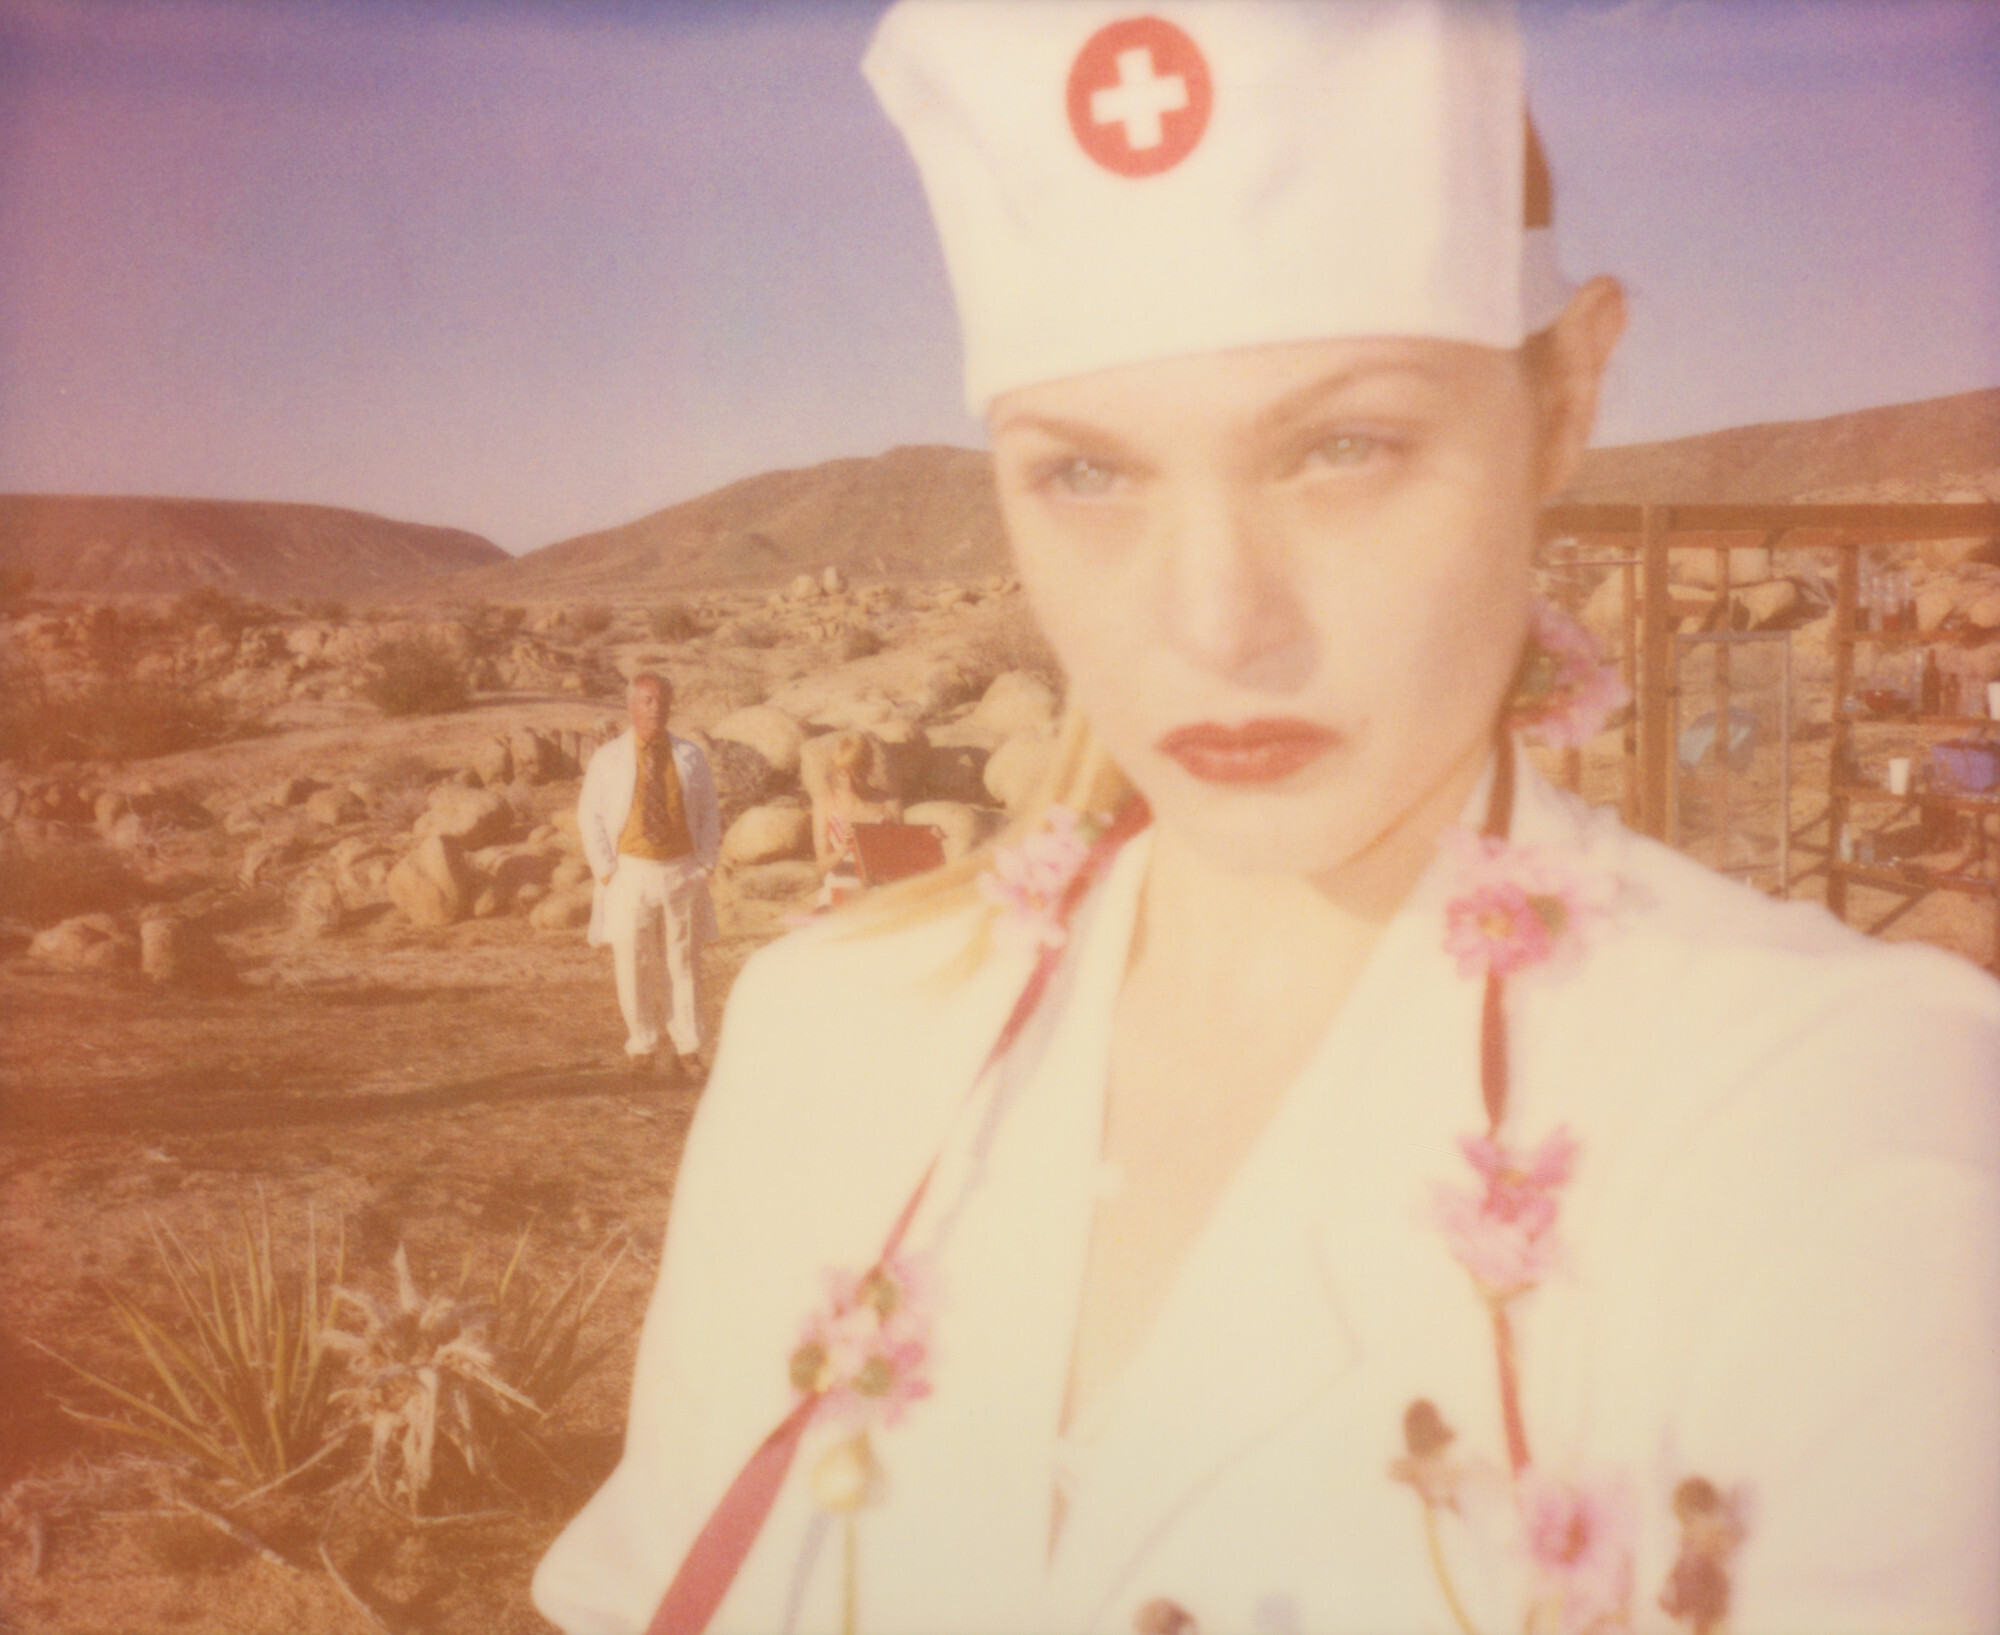 Медсестра (Heathers Dream) из фильма Девушка за белым частоколом , 2013 г., полароид. Фотограф Стефани Шнайдер